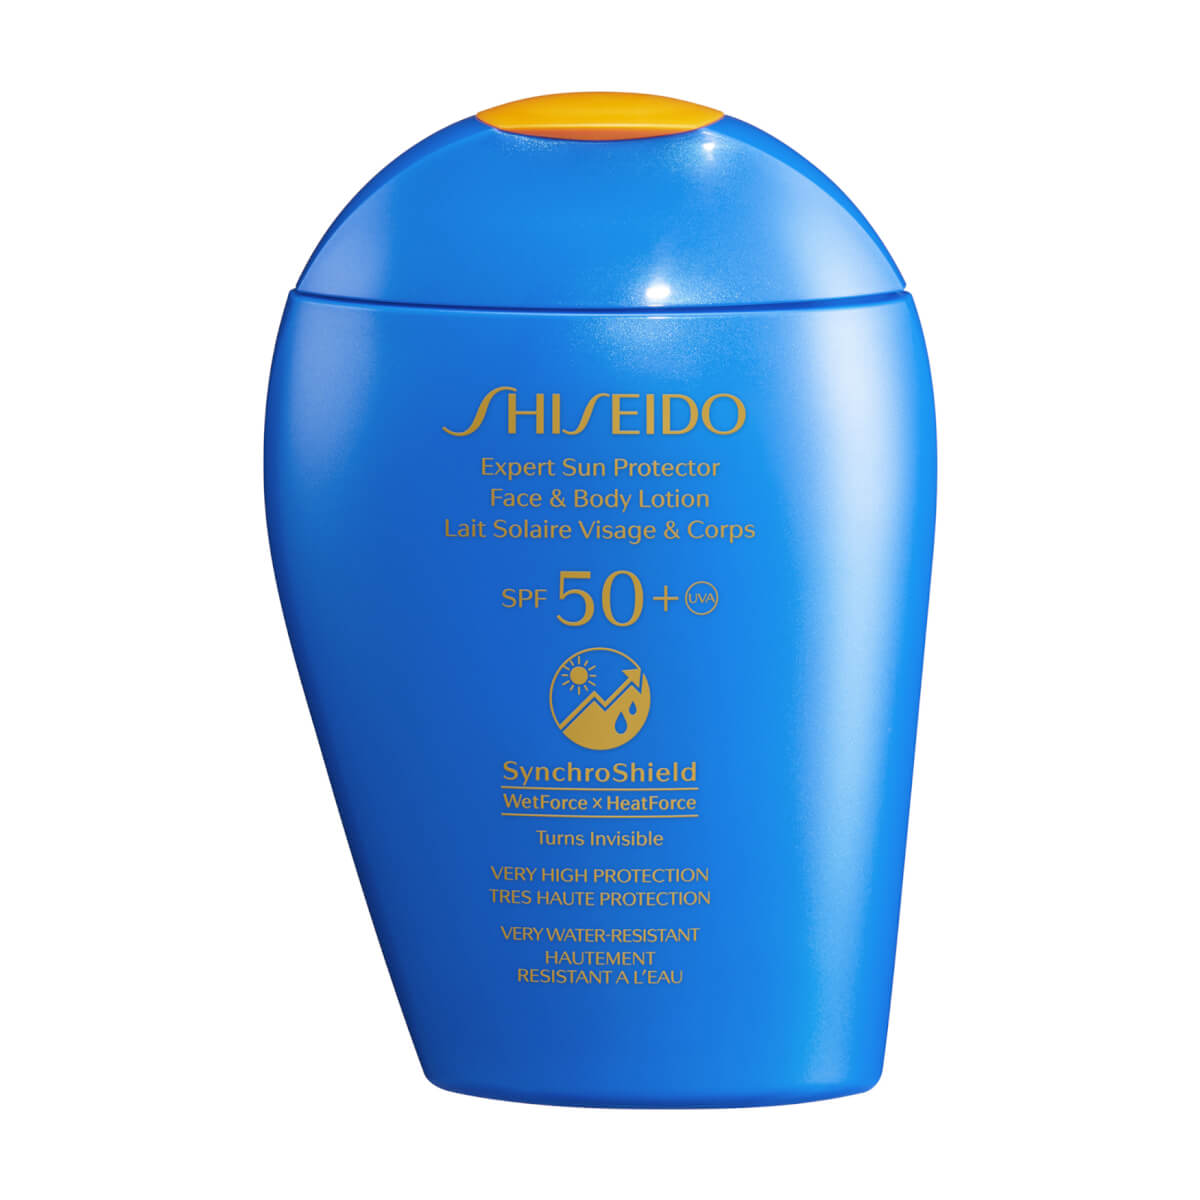 SHISEIDO | EXPERT SUN PROTECTOR FACE & BODY LOTION SPF 50+ 150ML | £34.00